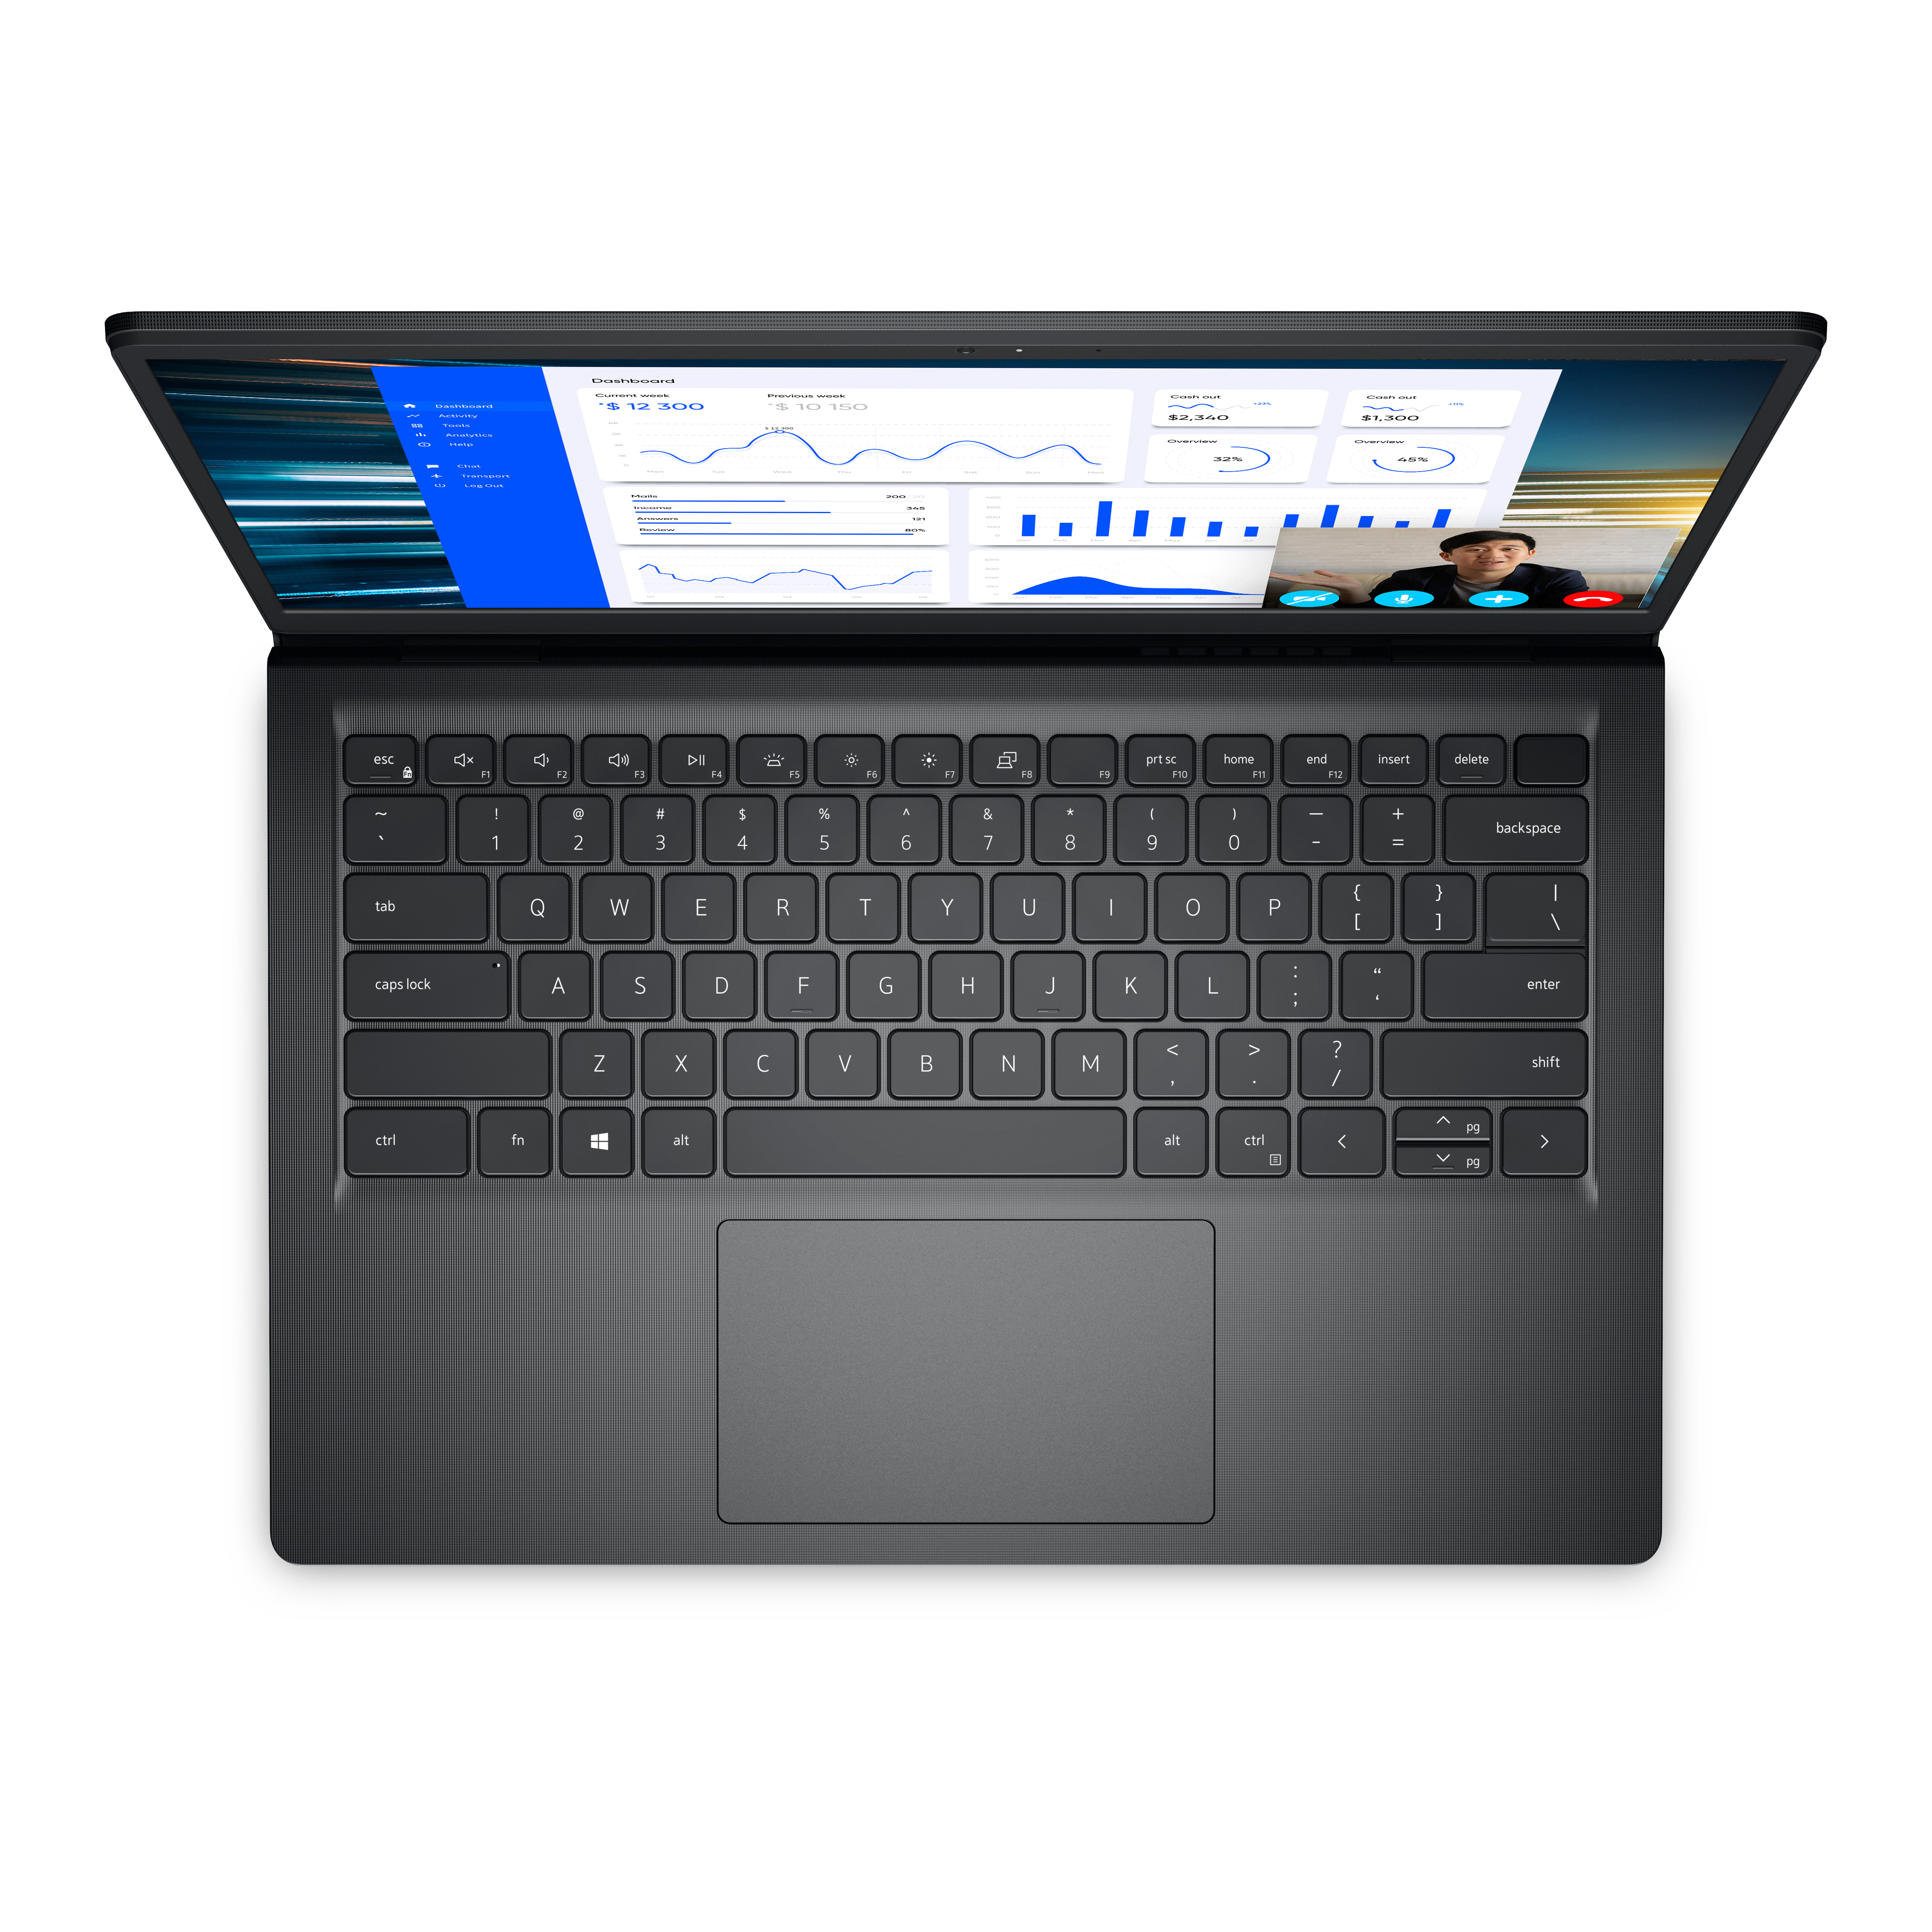 Dell Vostro 3425 laptop | Dell India